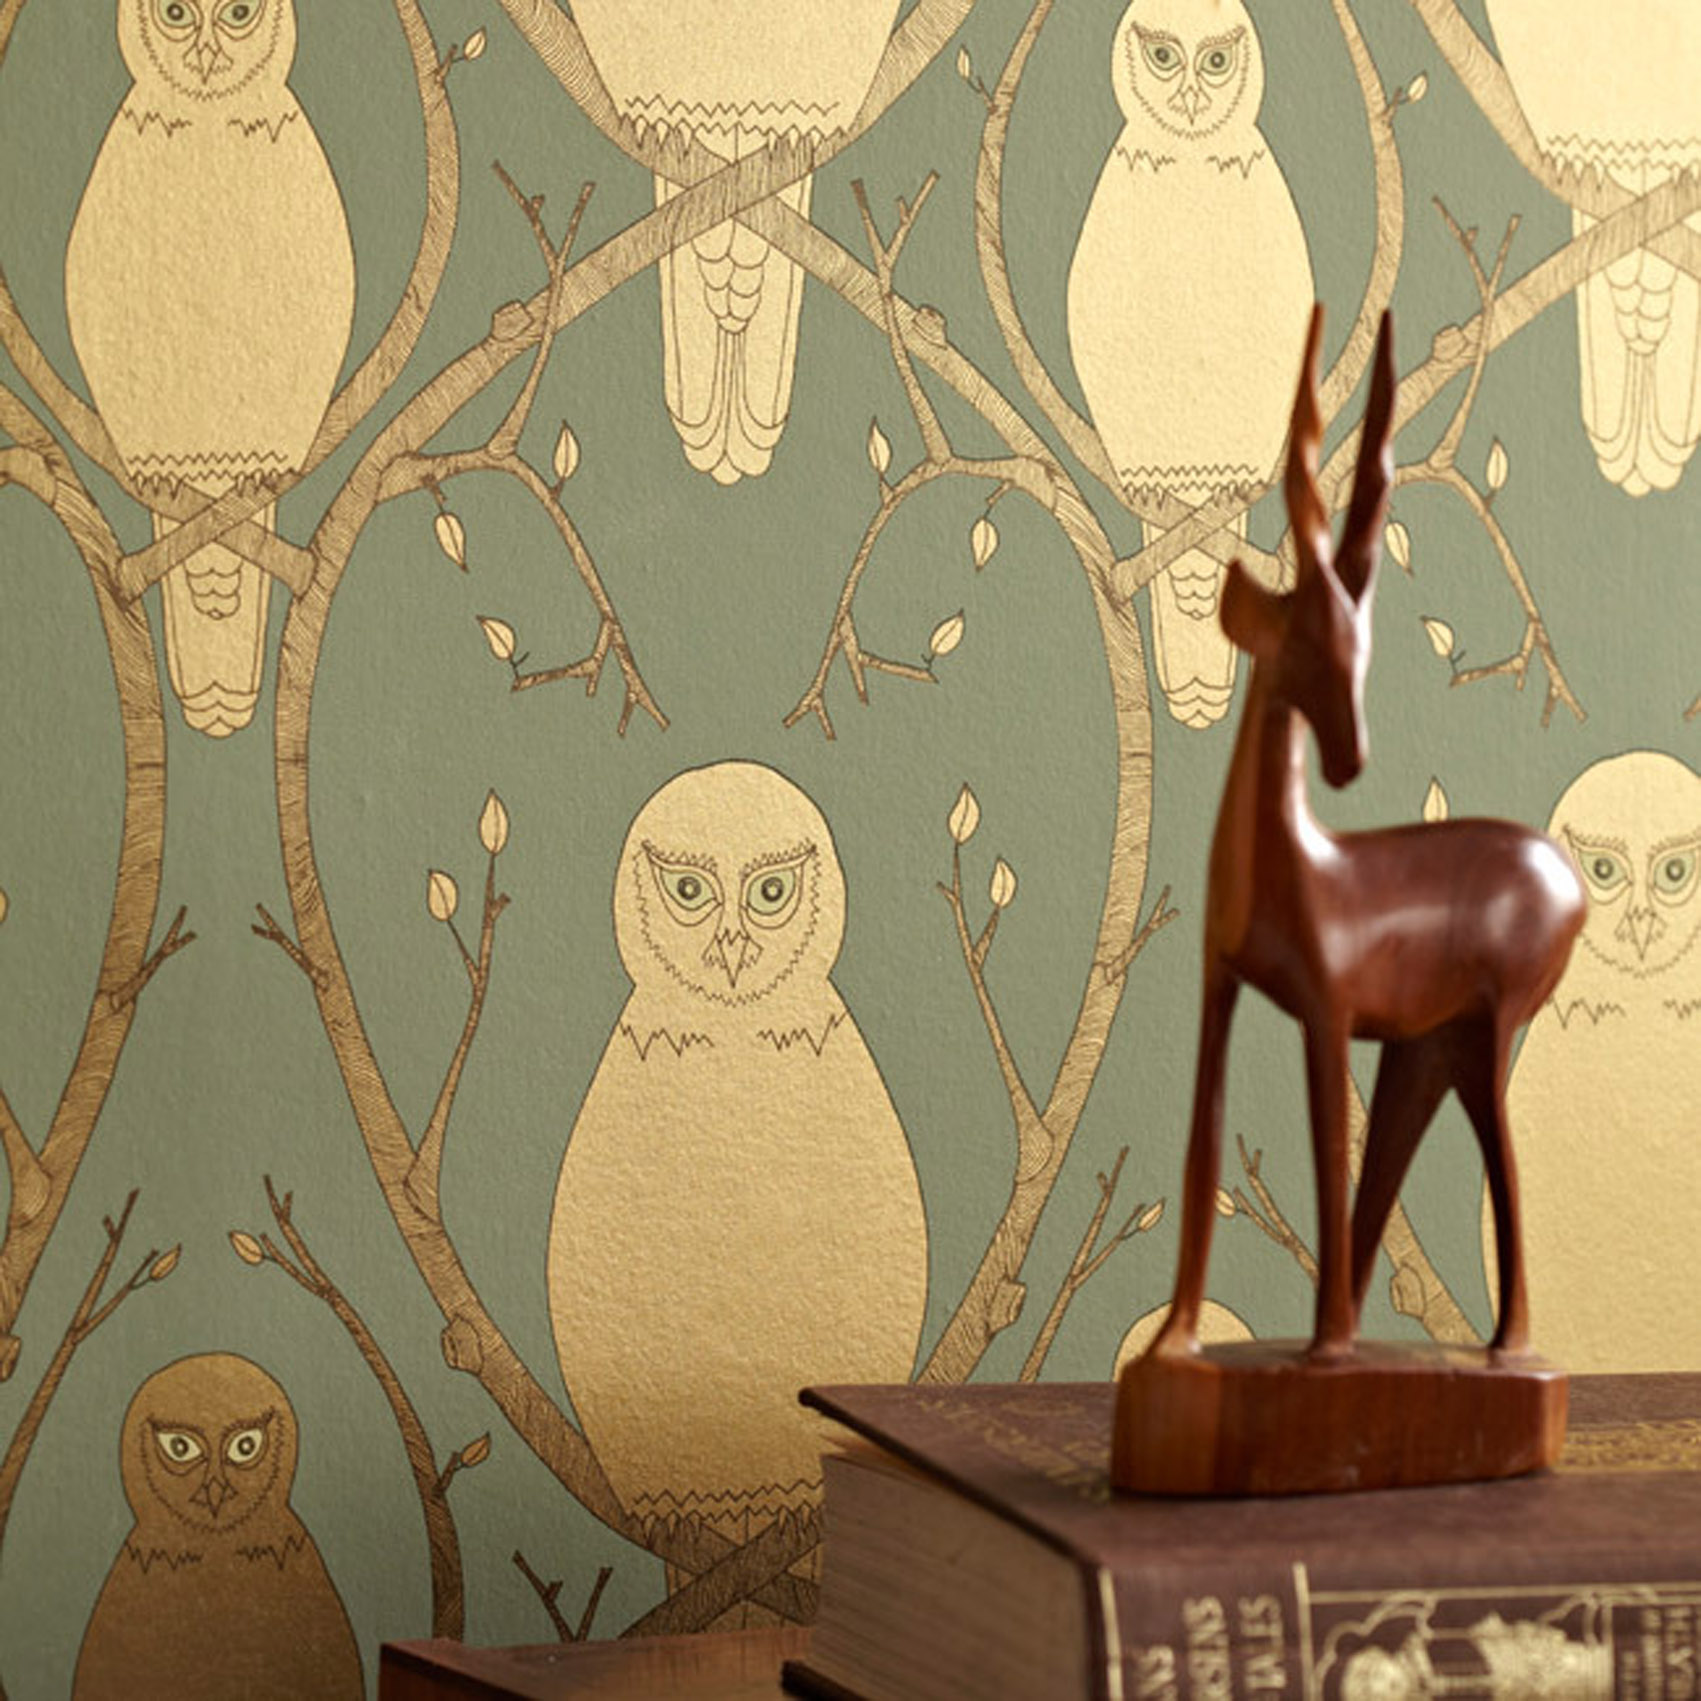 owl wallpaper,wallpaper,illustration,art,design,visual arts